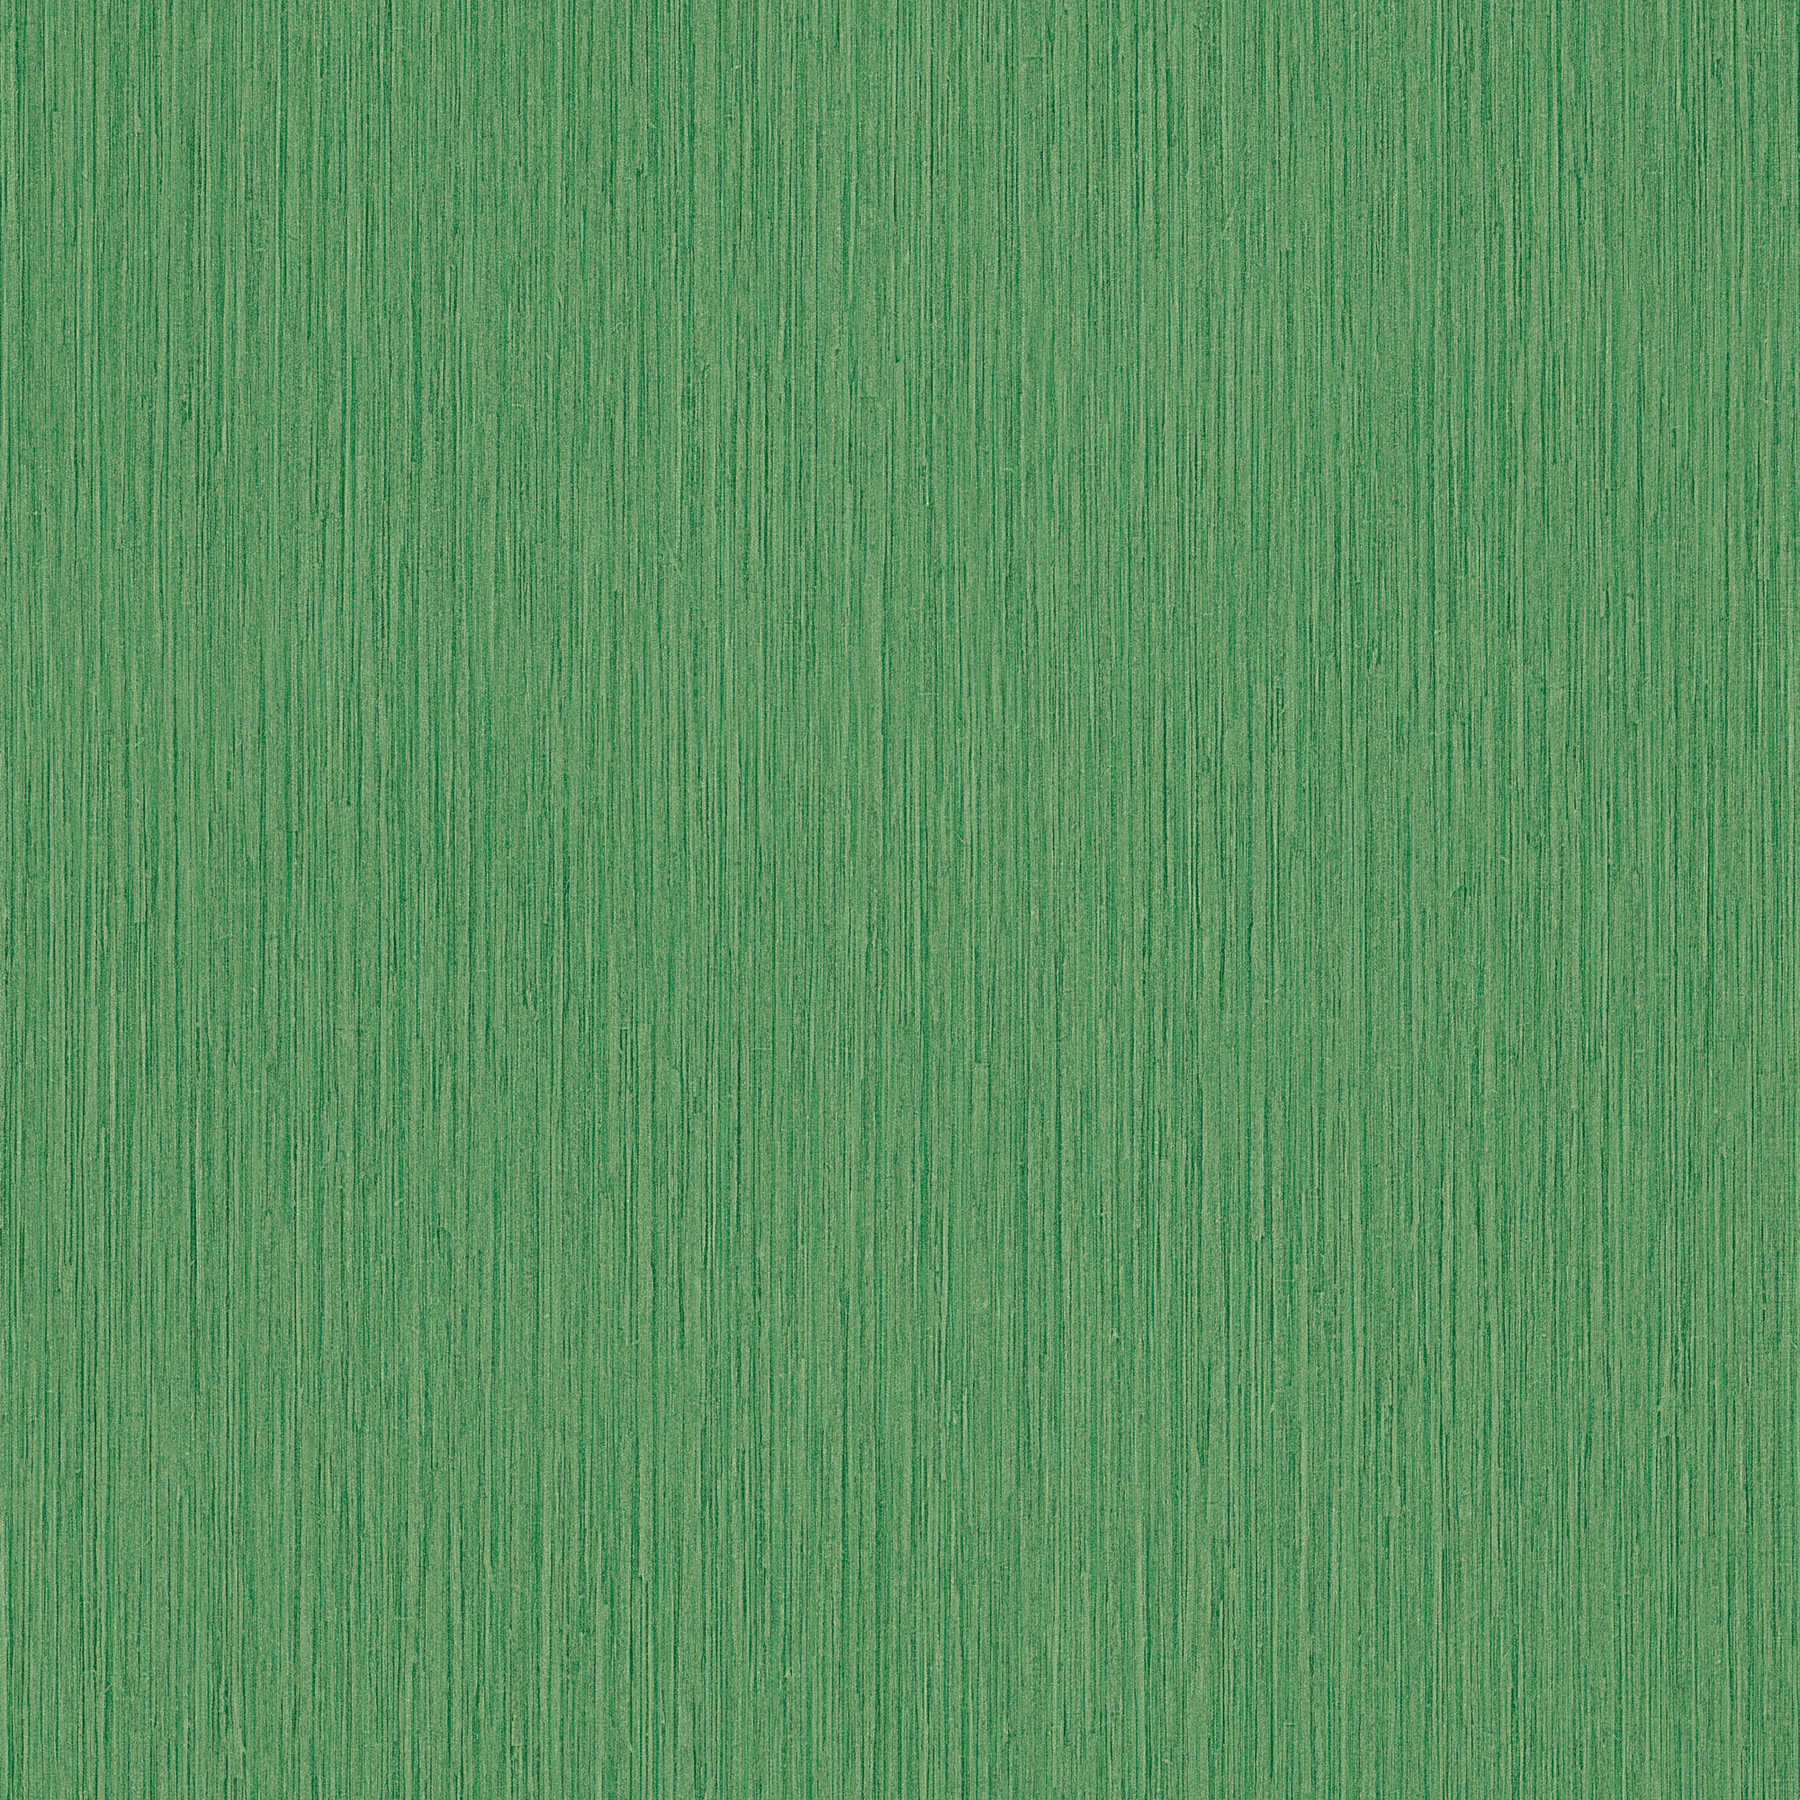 Grüne Tapete mit Strukturdesign Grasgrün meliert
